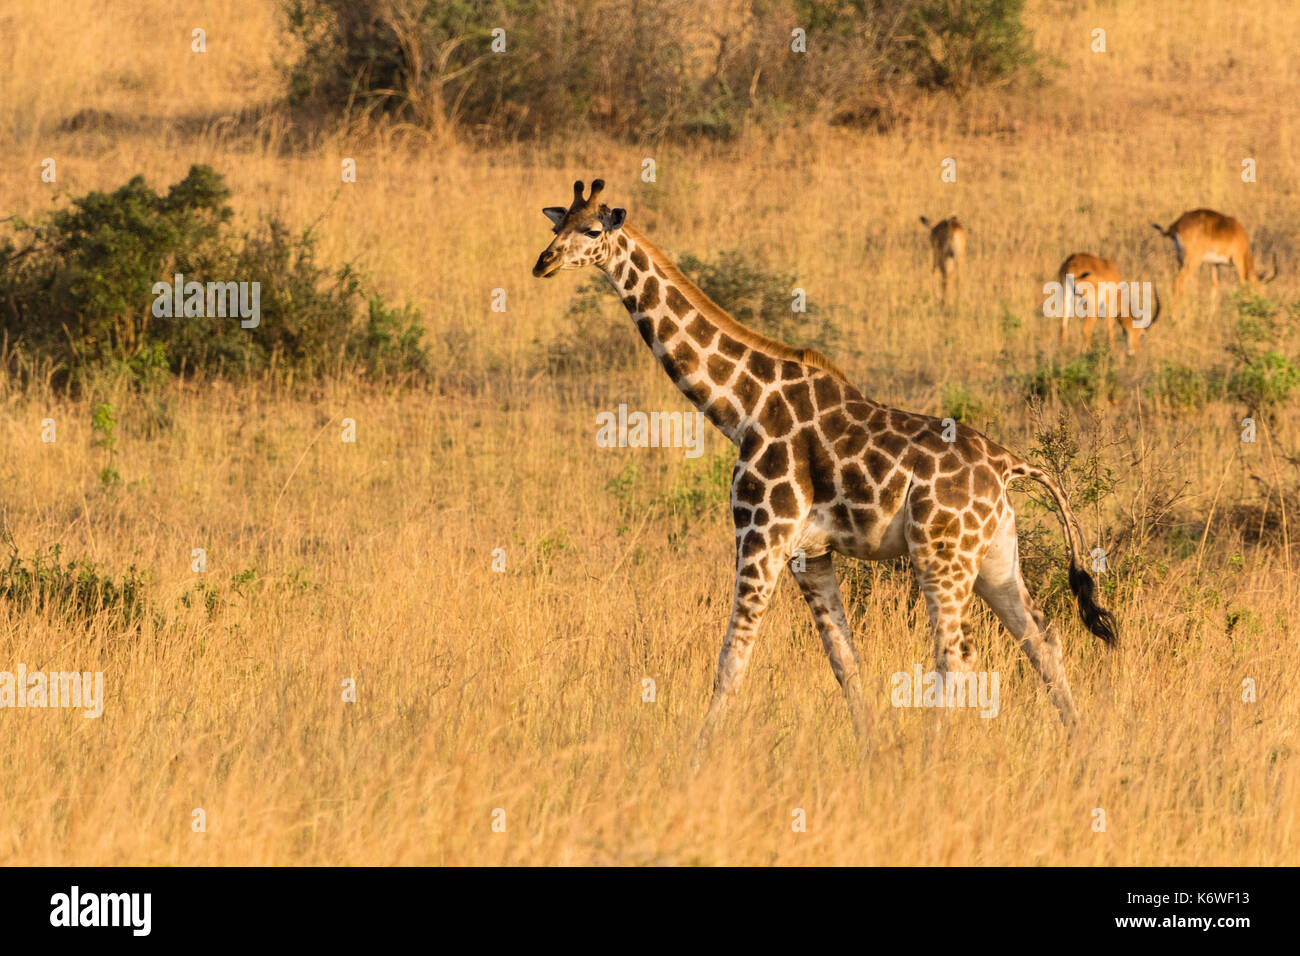 Giraffa Rothschild (Giraffa Camelopardalis Rothschildi), caminando en praderas secas, Parque Nacional Murchison Falls, Uganda Foto de stock